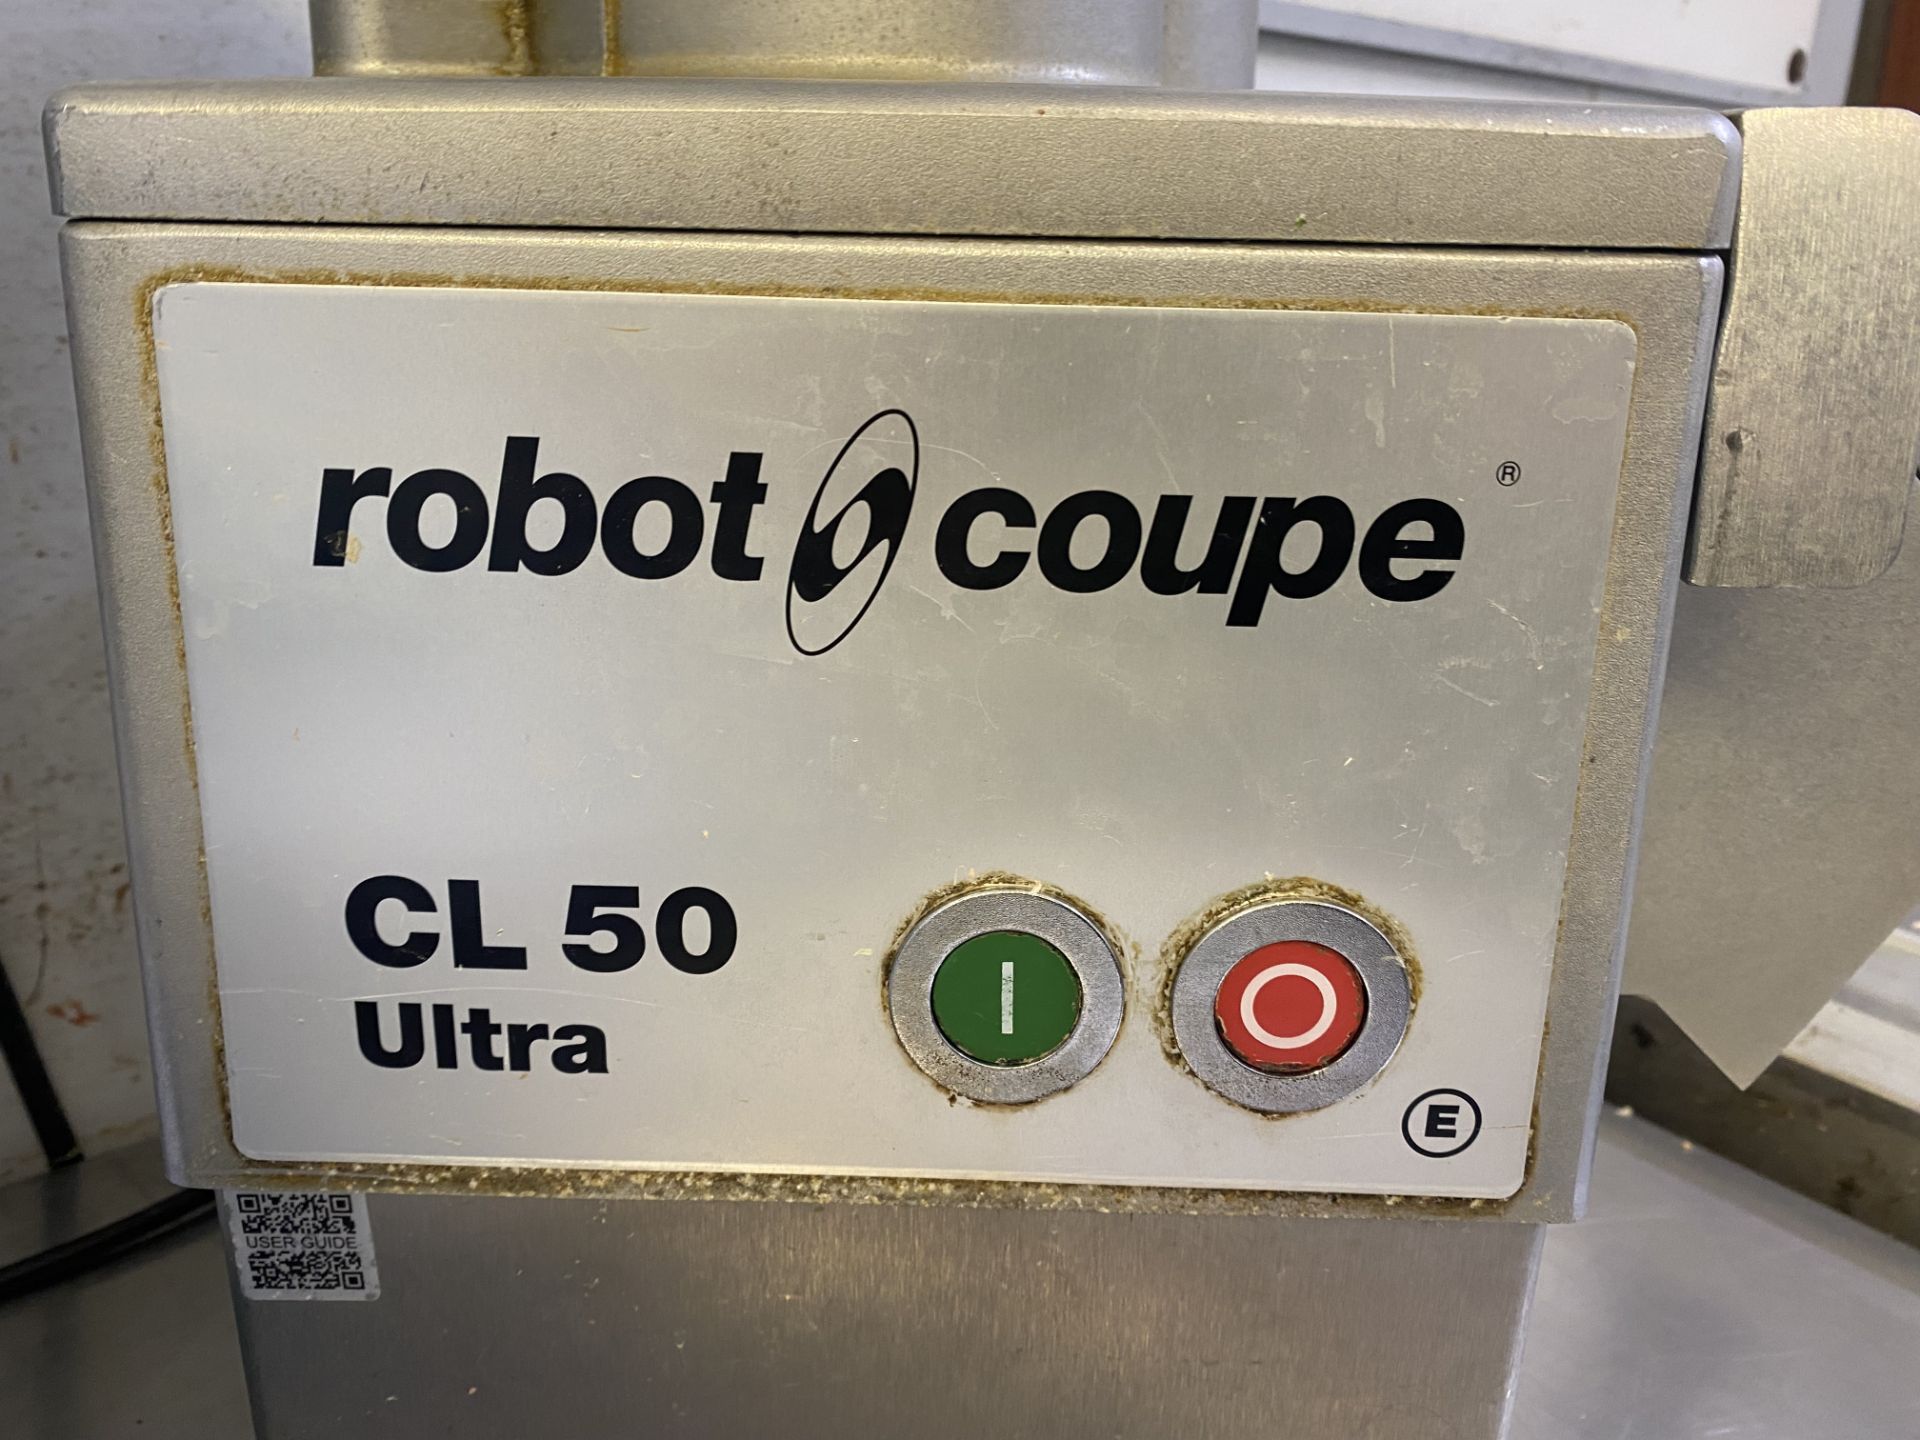 Robot Coupe CL50 Ultra veg slicer/grater - Image 2 of 5